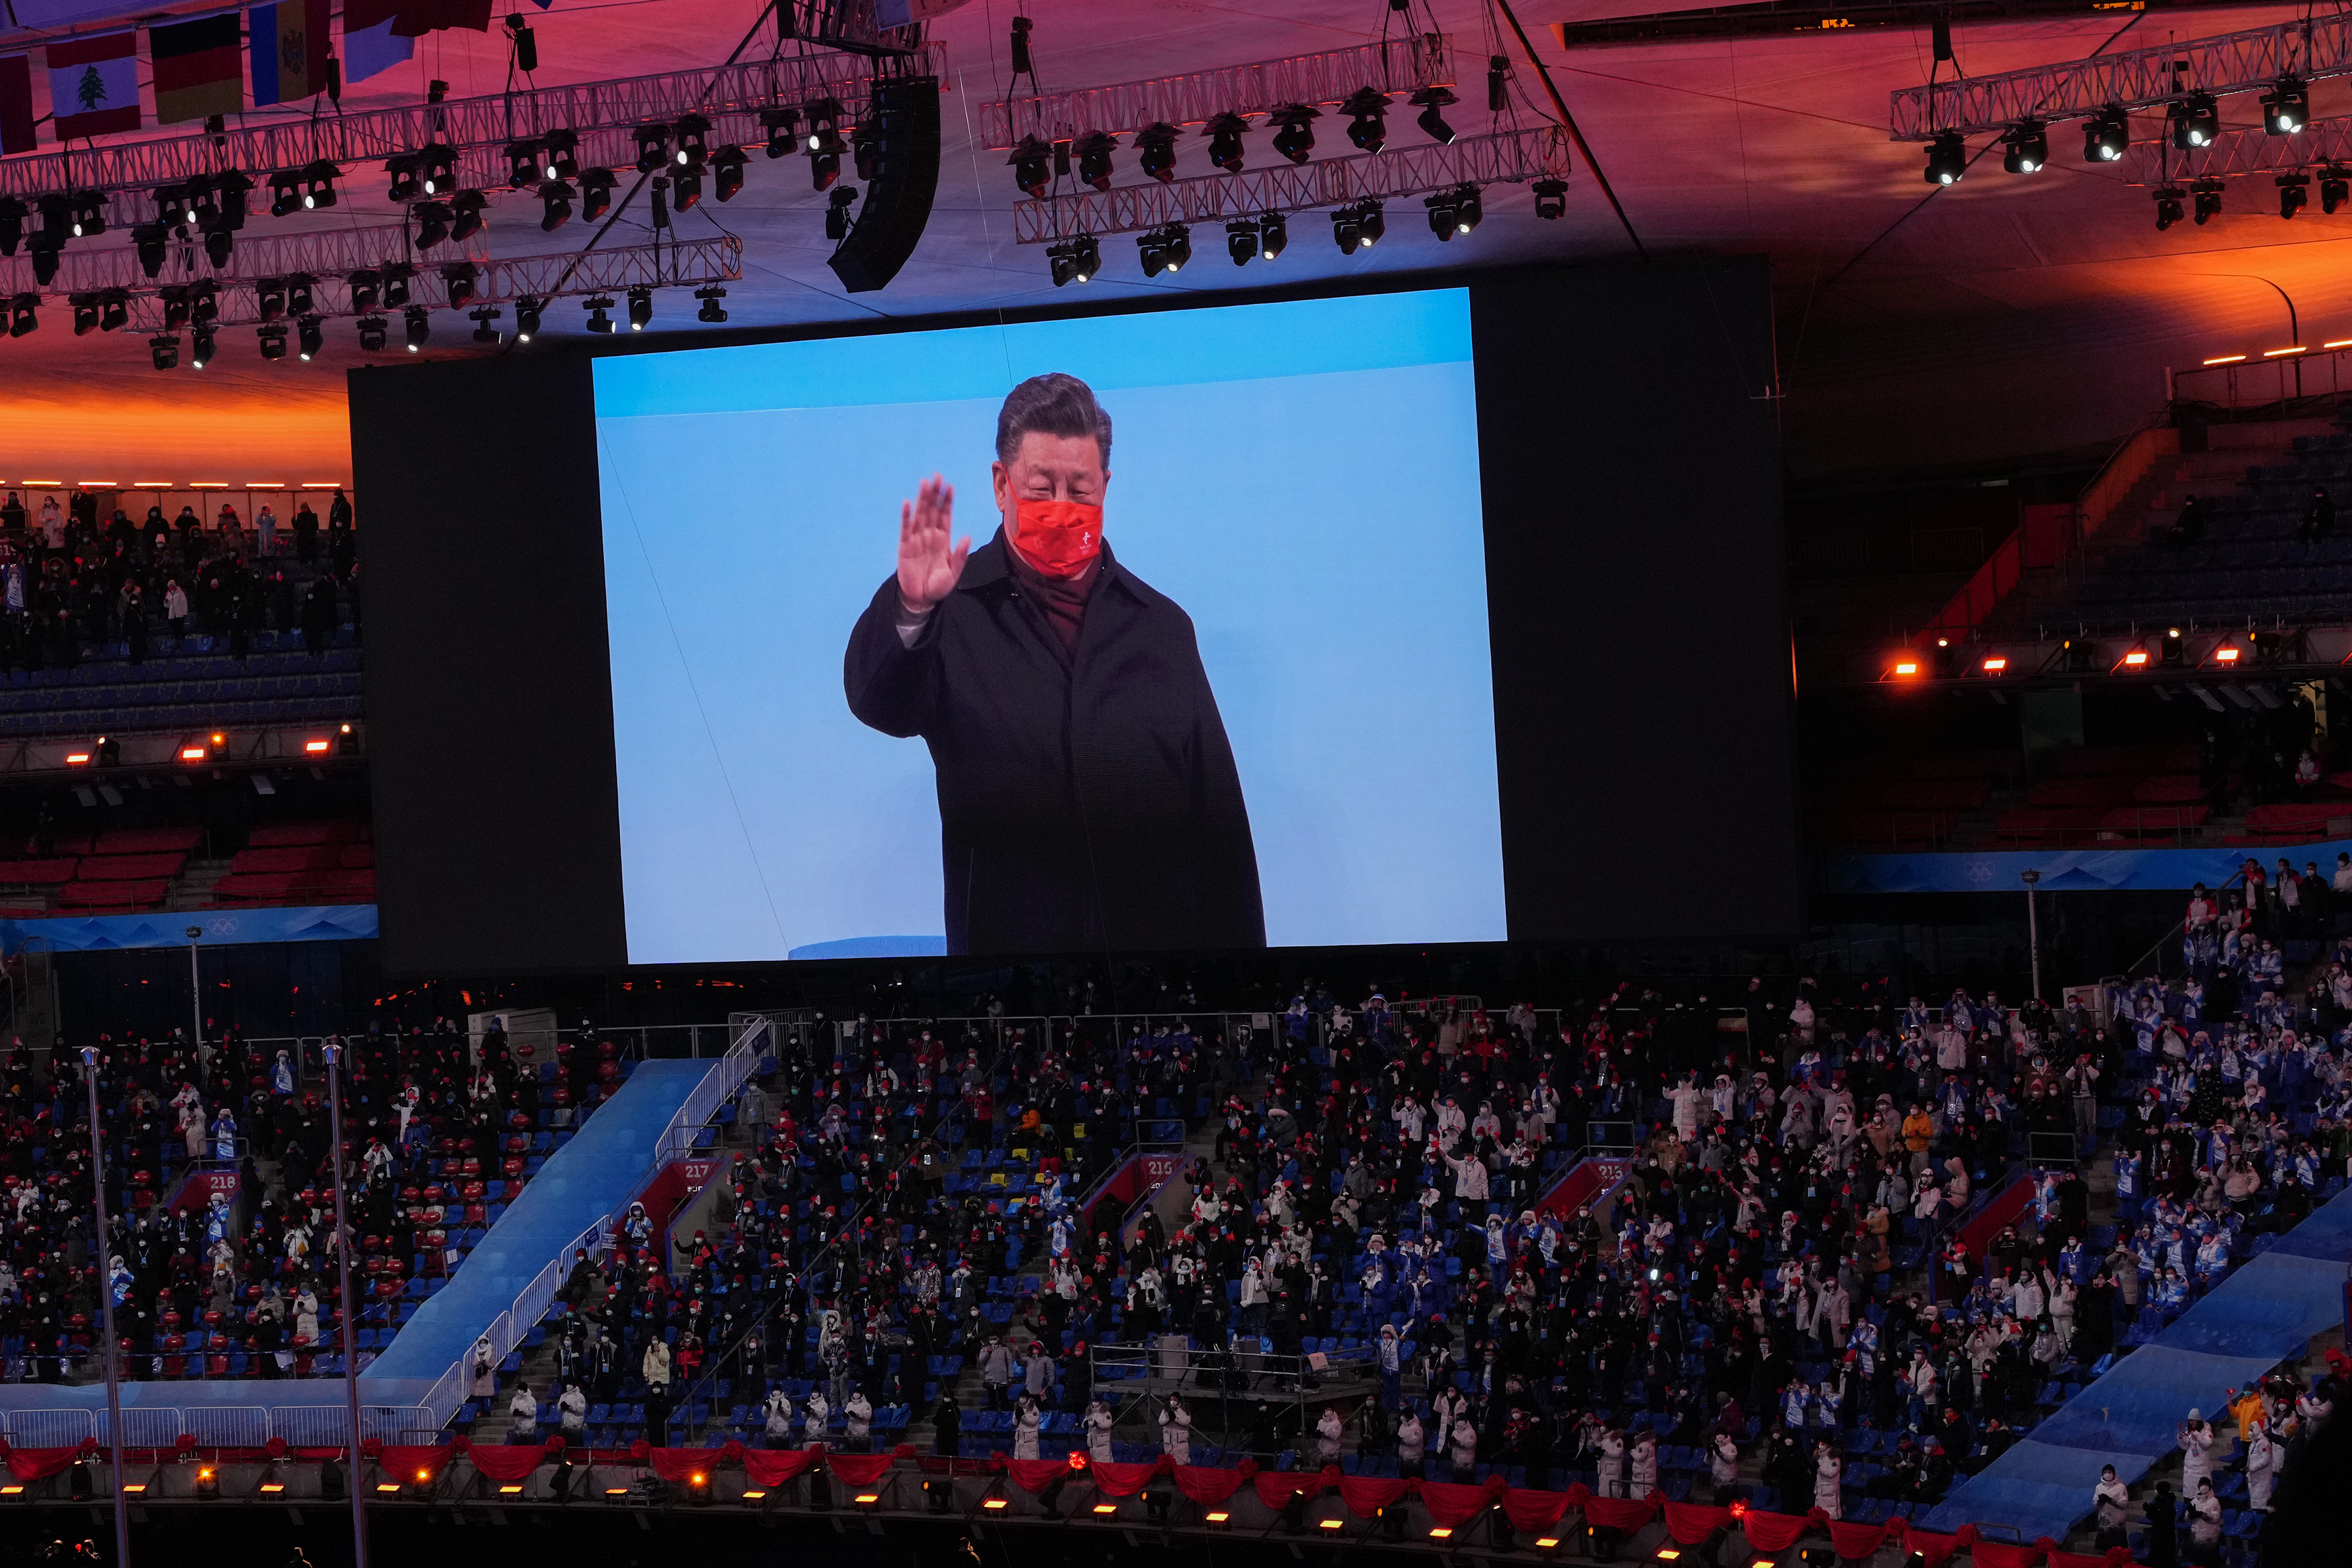 El presidente de China, Xi Jinping, aparece en una pantalla durante la ceremonia de clausura de los Juegos Olímpicos de Invierno de 2022, en Pekín, el domingo 20 de febrero de 2022. (Hiroko Masuike/The New York Times)